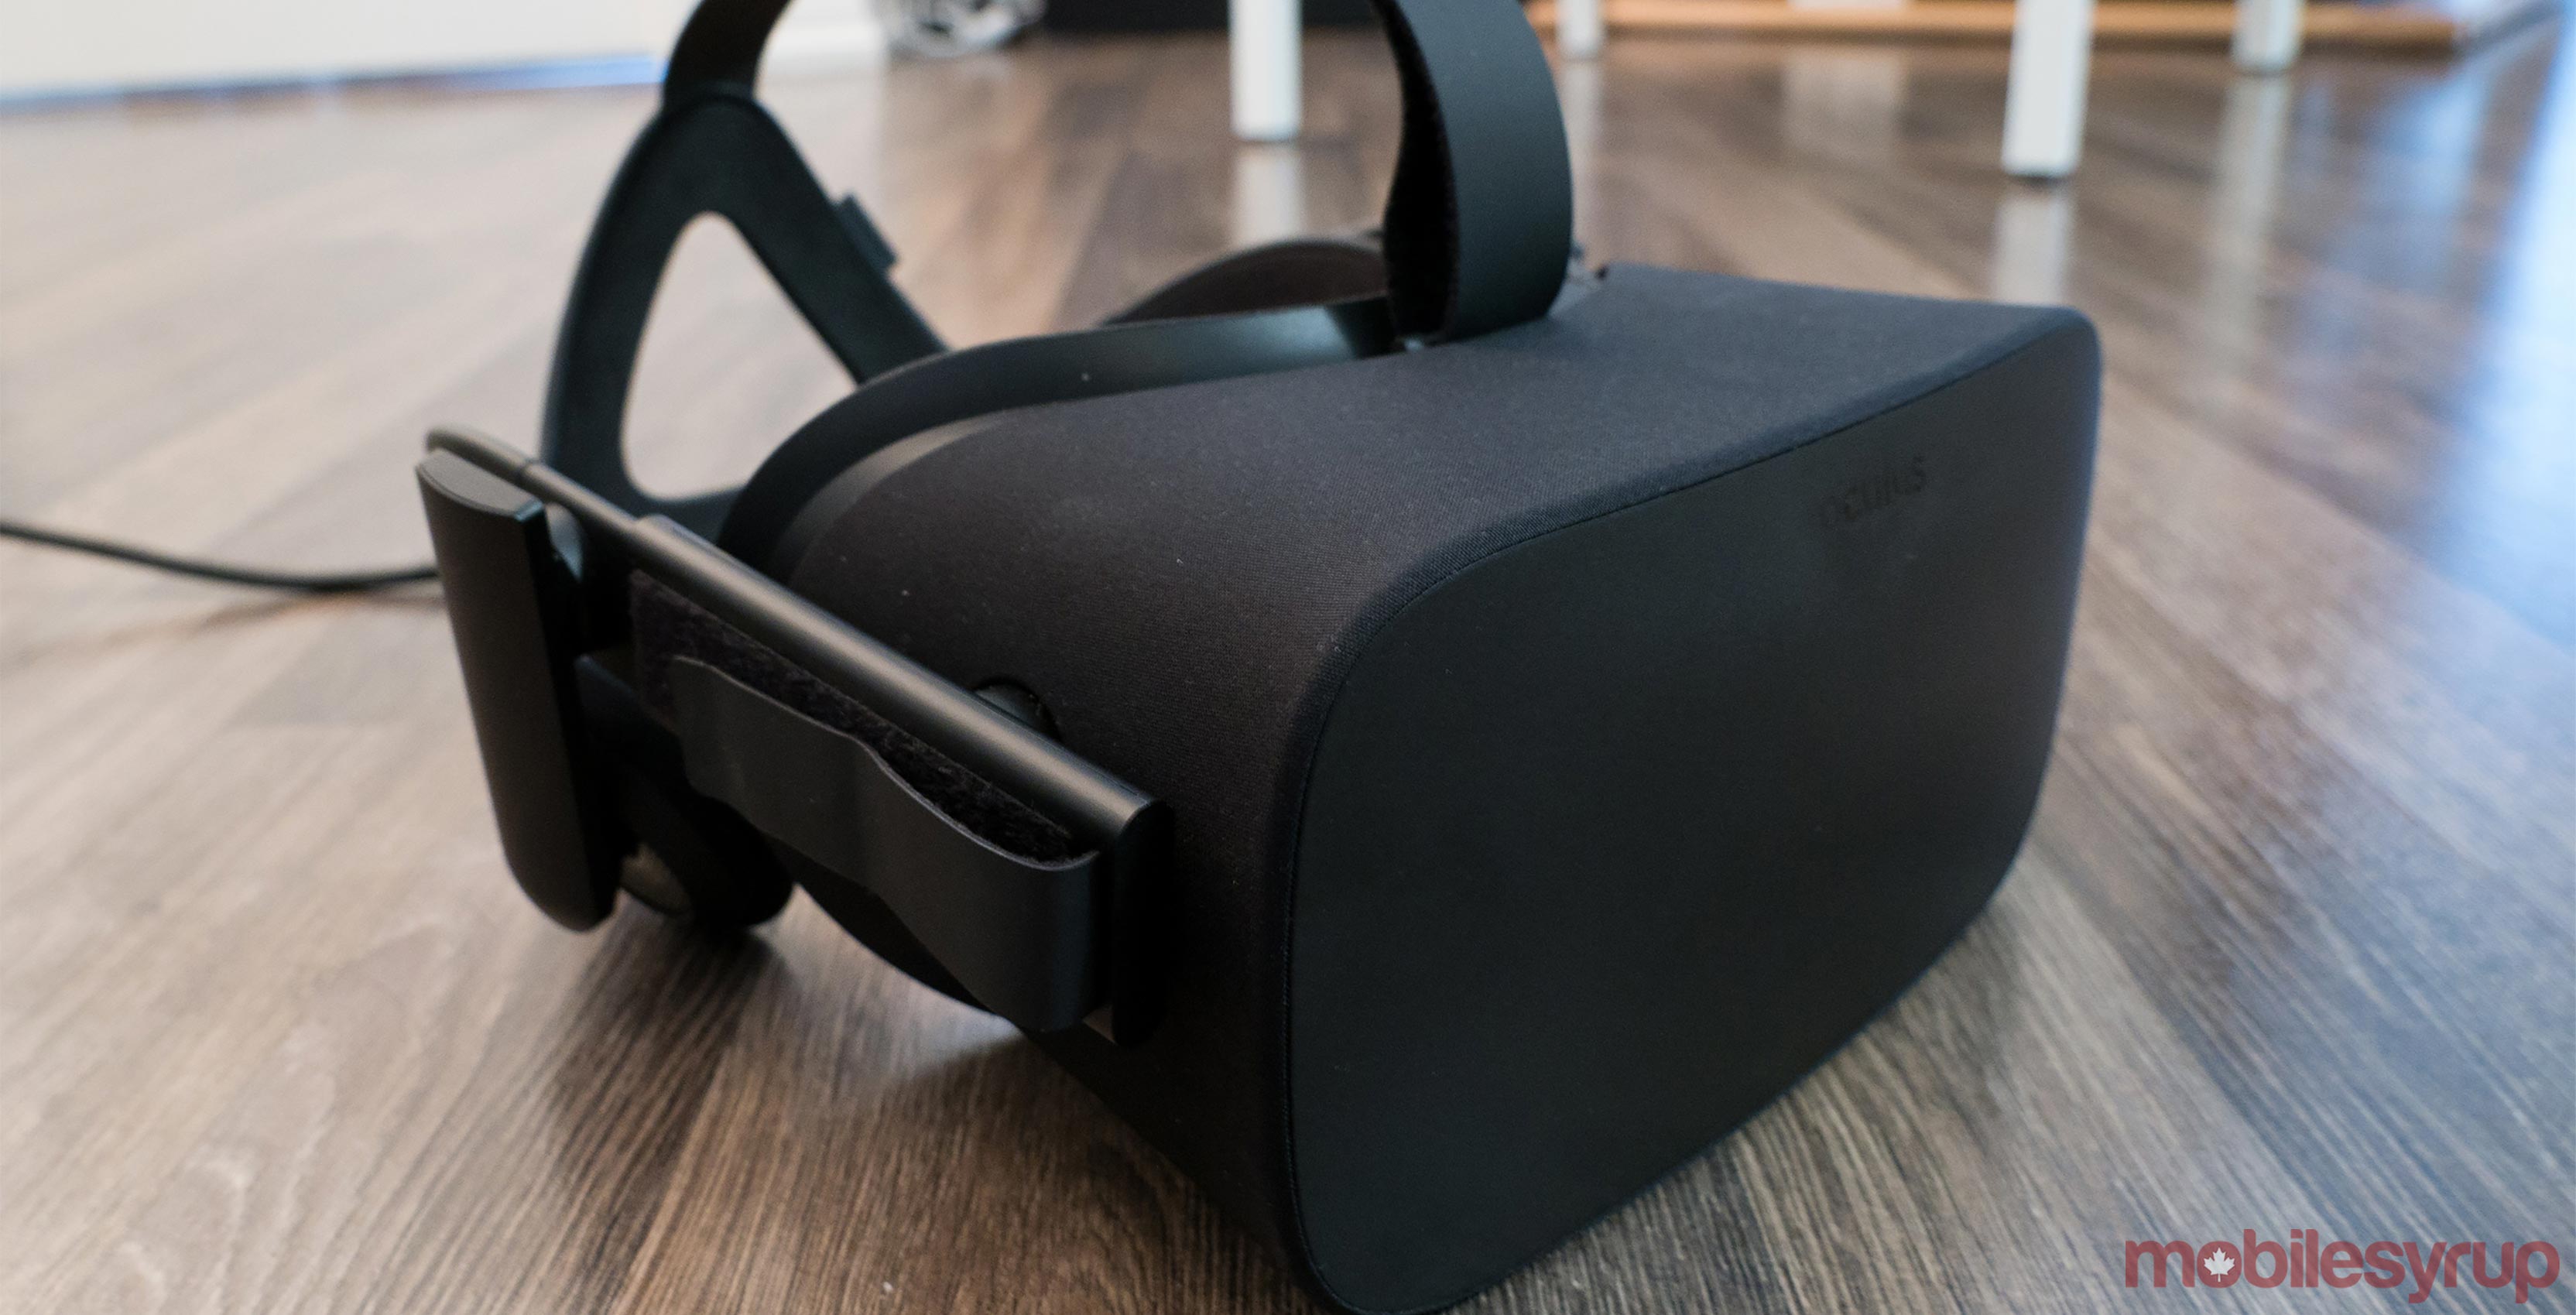 Oculus Rift VR headset on floor